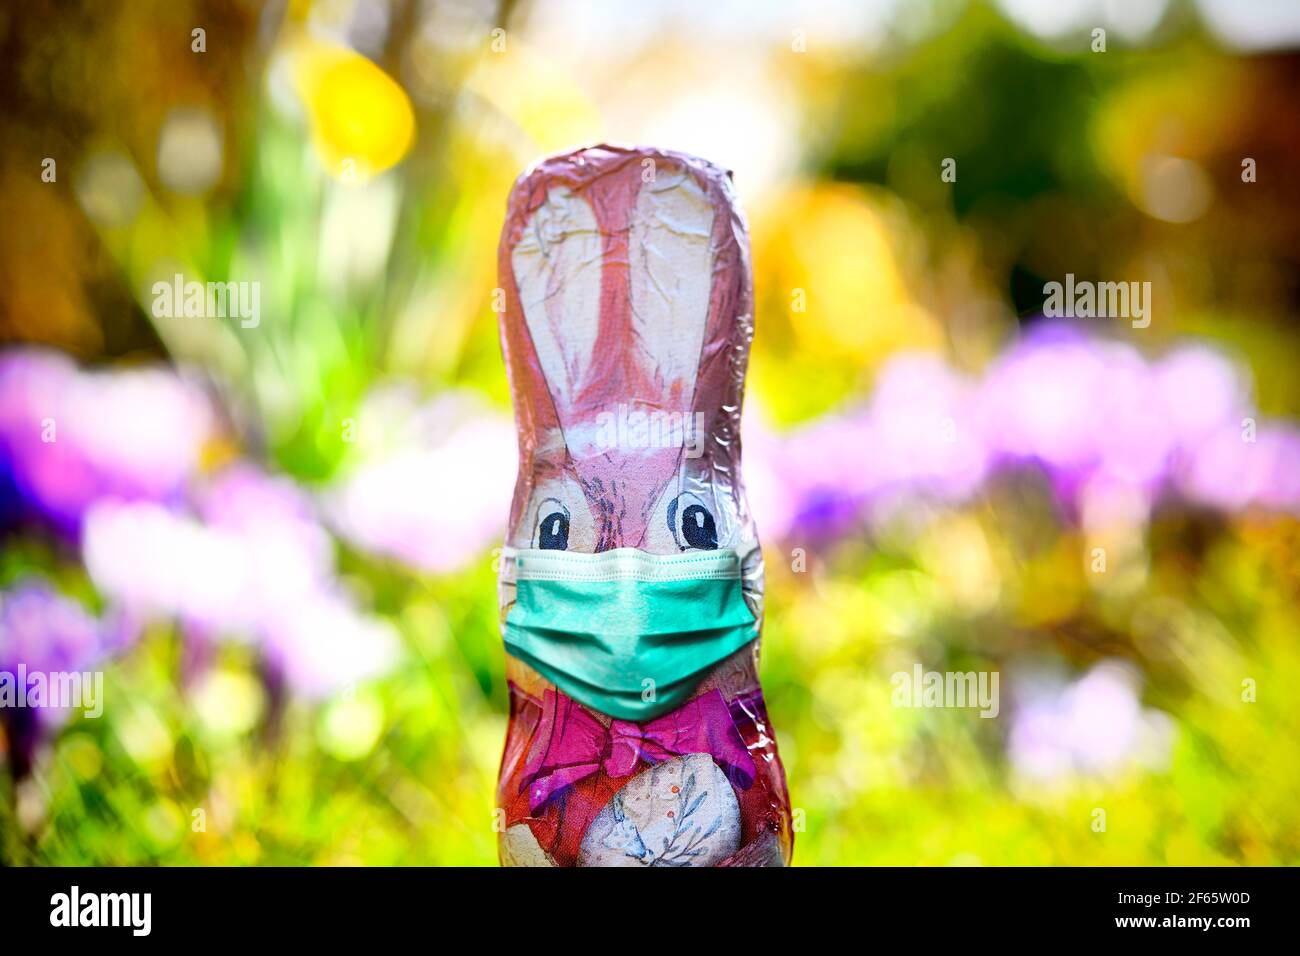 Conejito de Pascua de chocolate con máscara facial Foto de stock